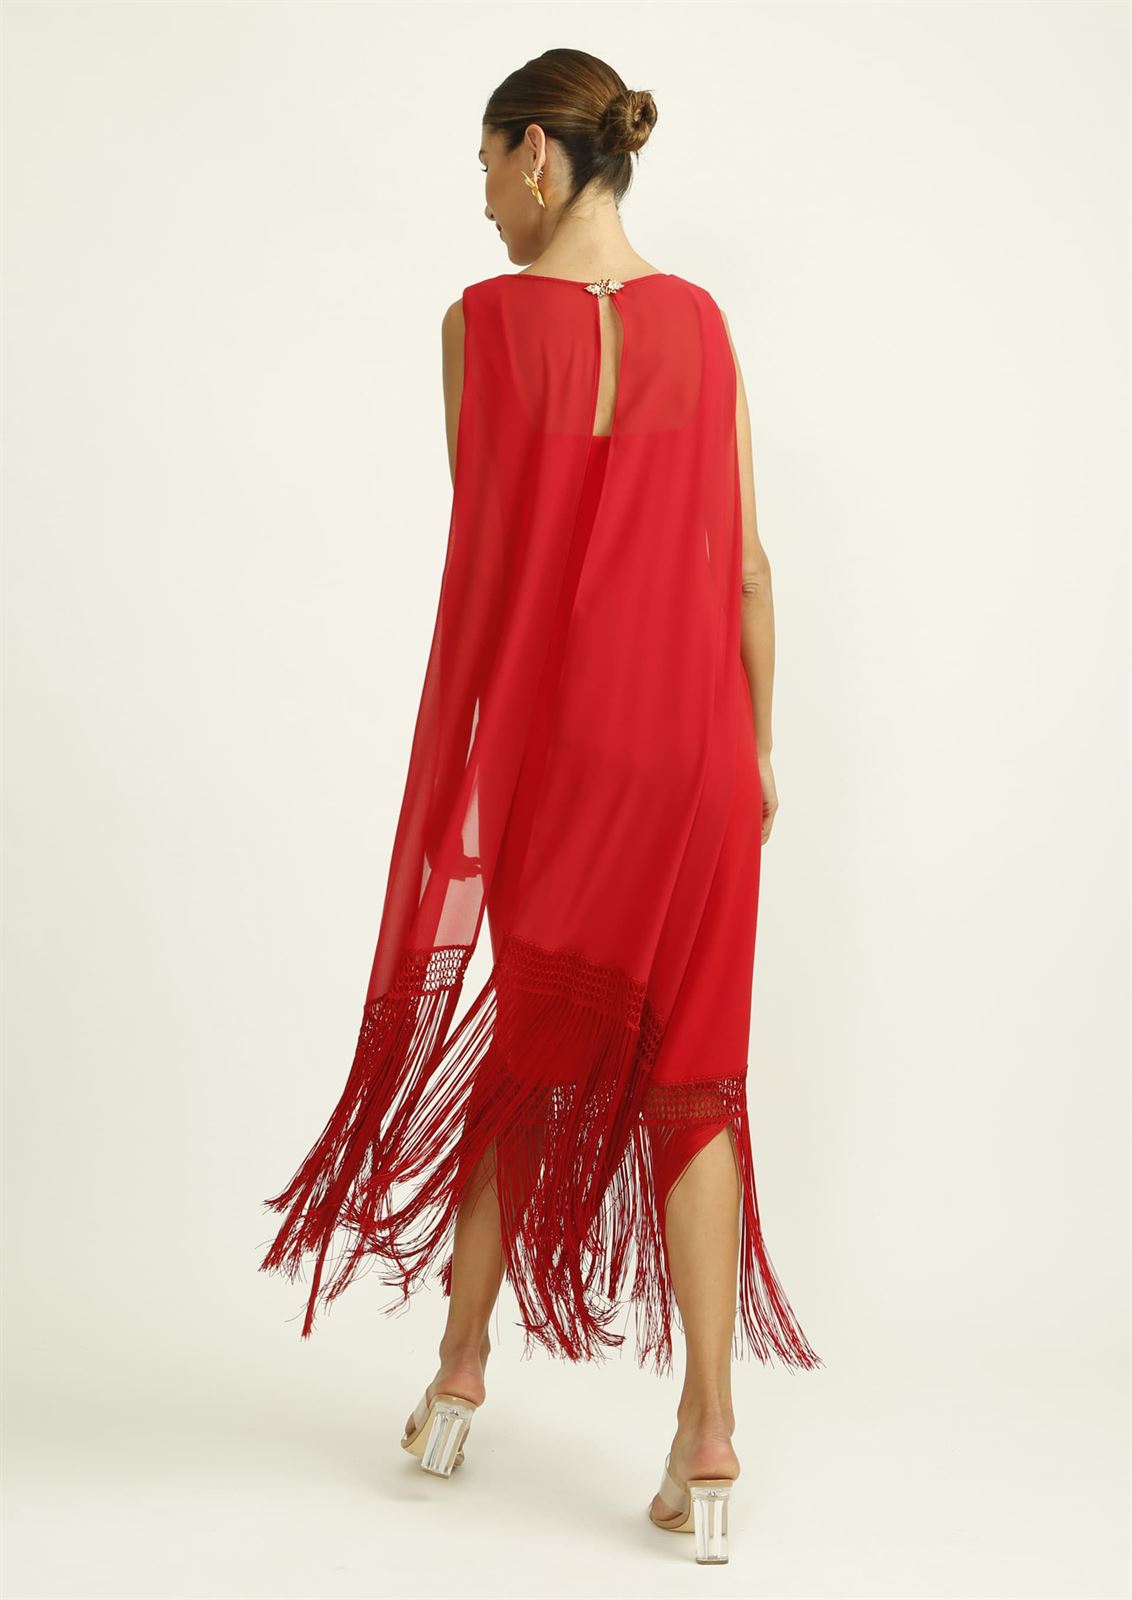 ALBA CONDE Vestido Rojo con Flecos en el Bajo - Imagen 5